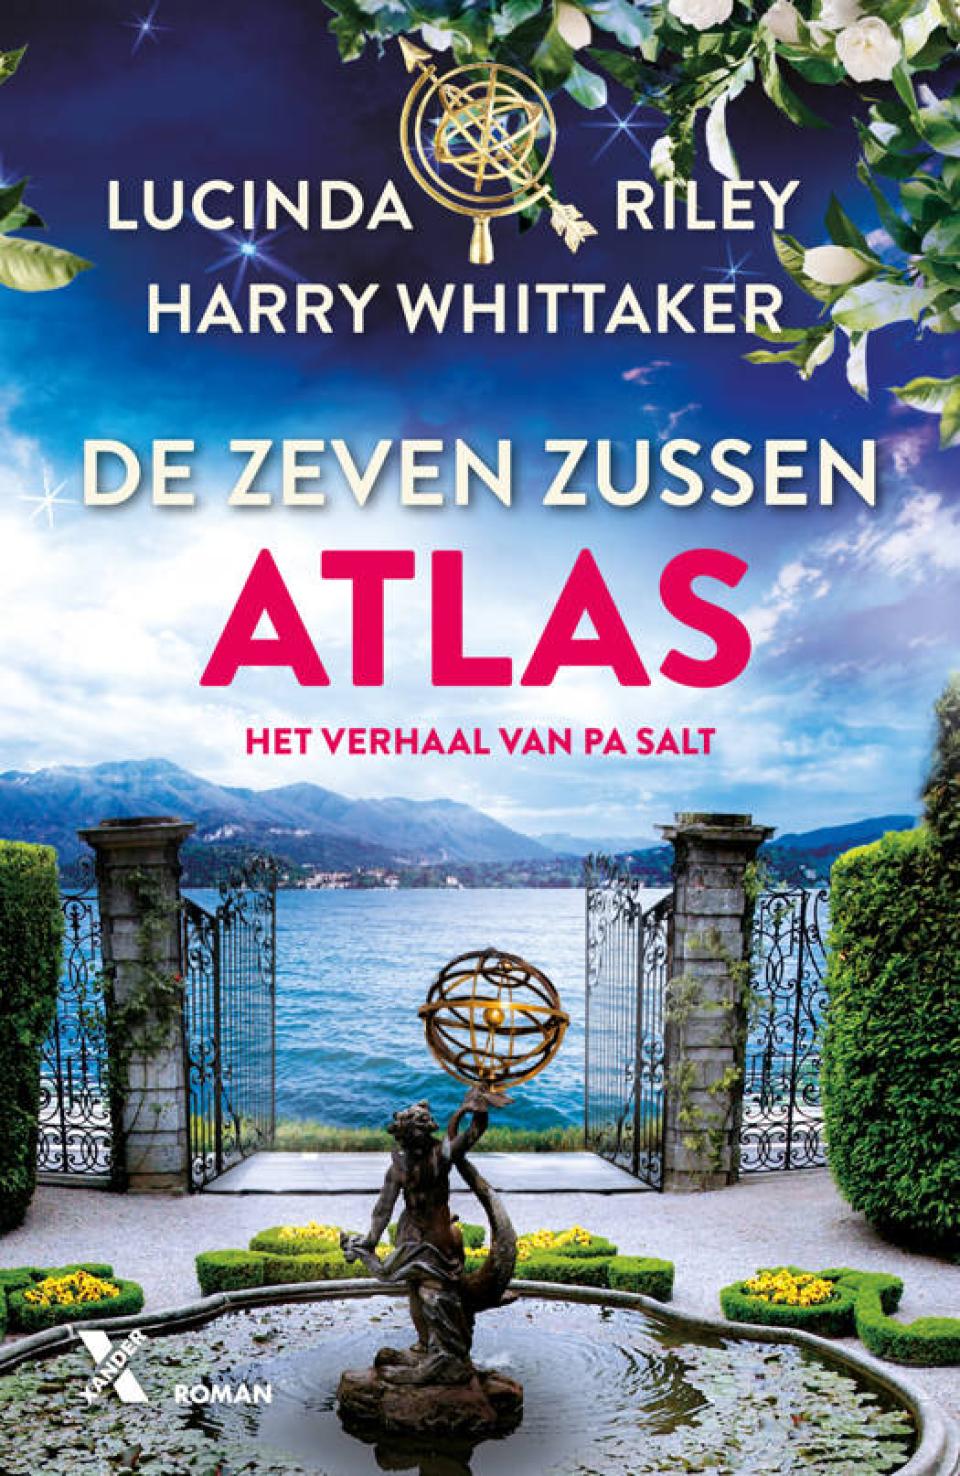 Cover boek Atlas van Lucinda Riley en Harry Whittaker